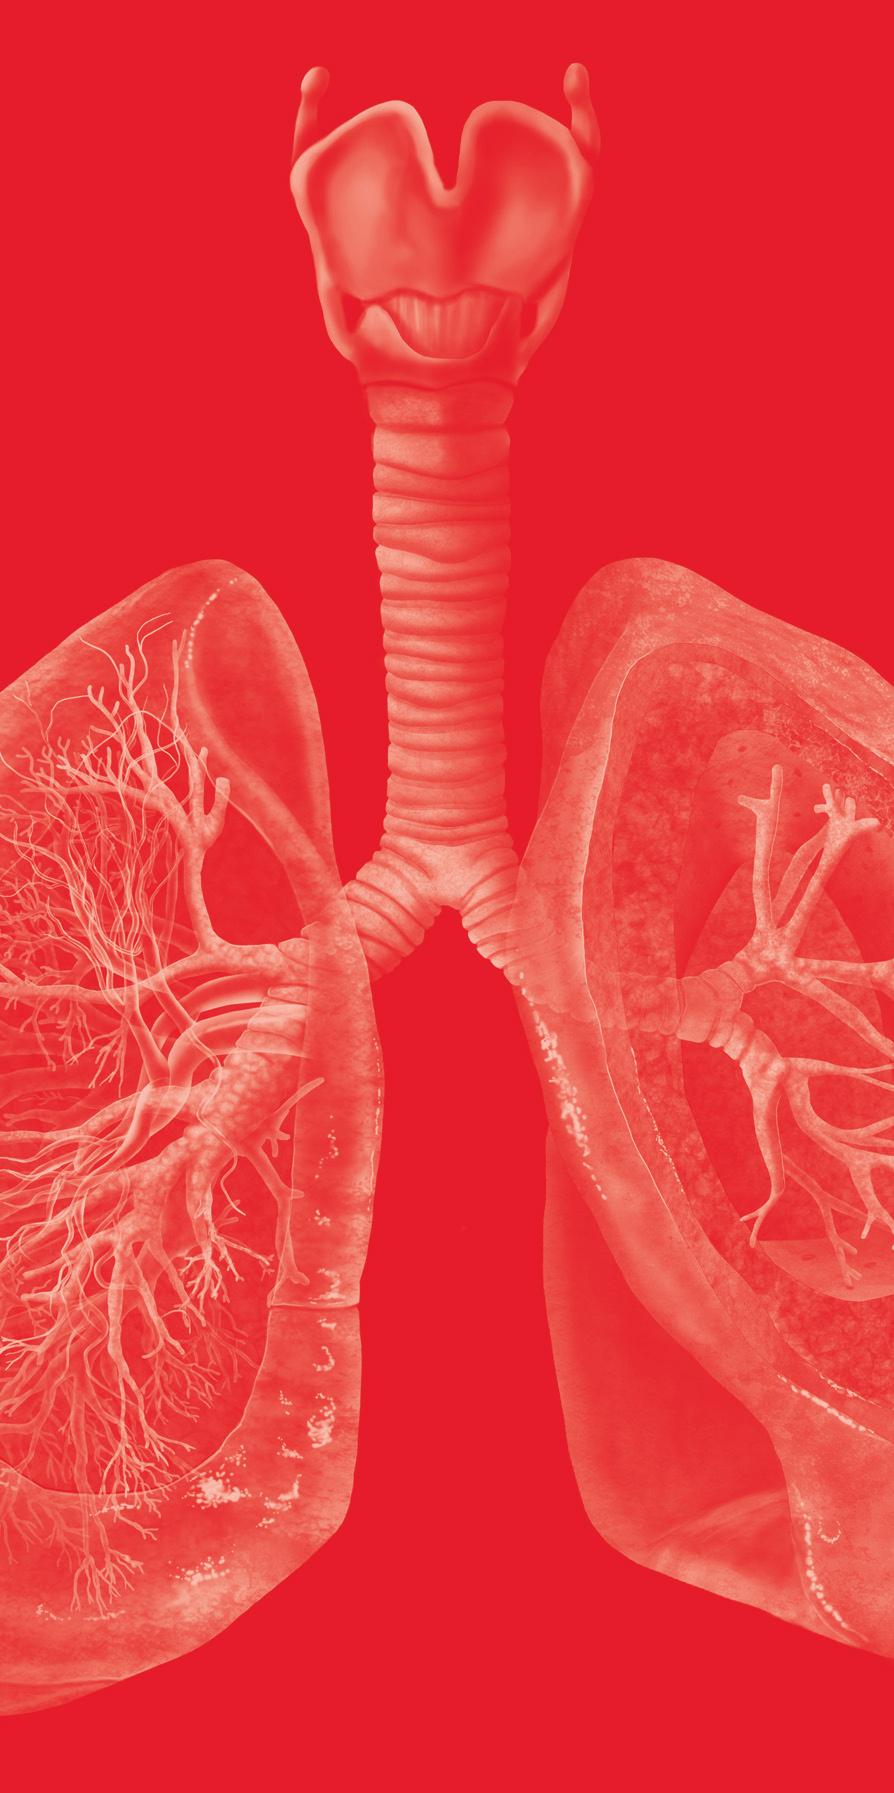 Rodrigo Antônio Brandão Neto Fabrício Martins Valois As doenças pulmonares parenquimatosas difusas ou Doenças Pulmonares Intersticiais (DPIs) envolvem o parênquima pulmonar, ou seja, o alvéolo, a